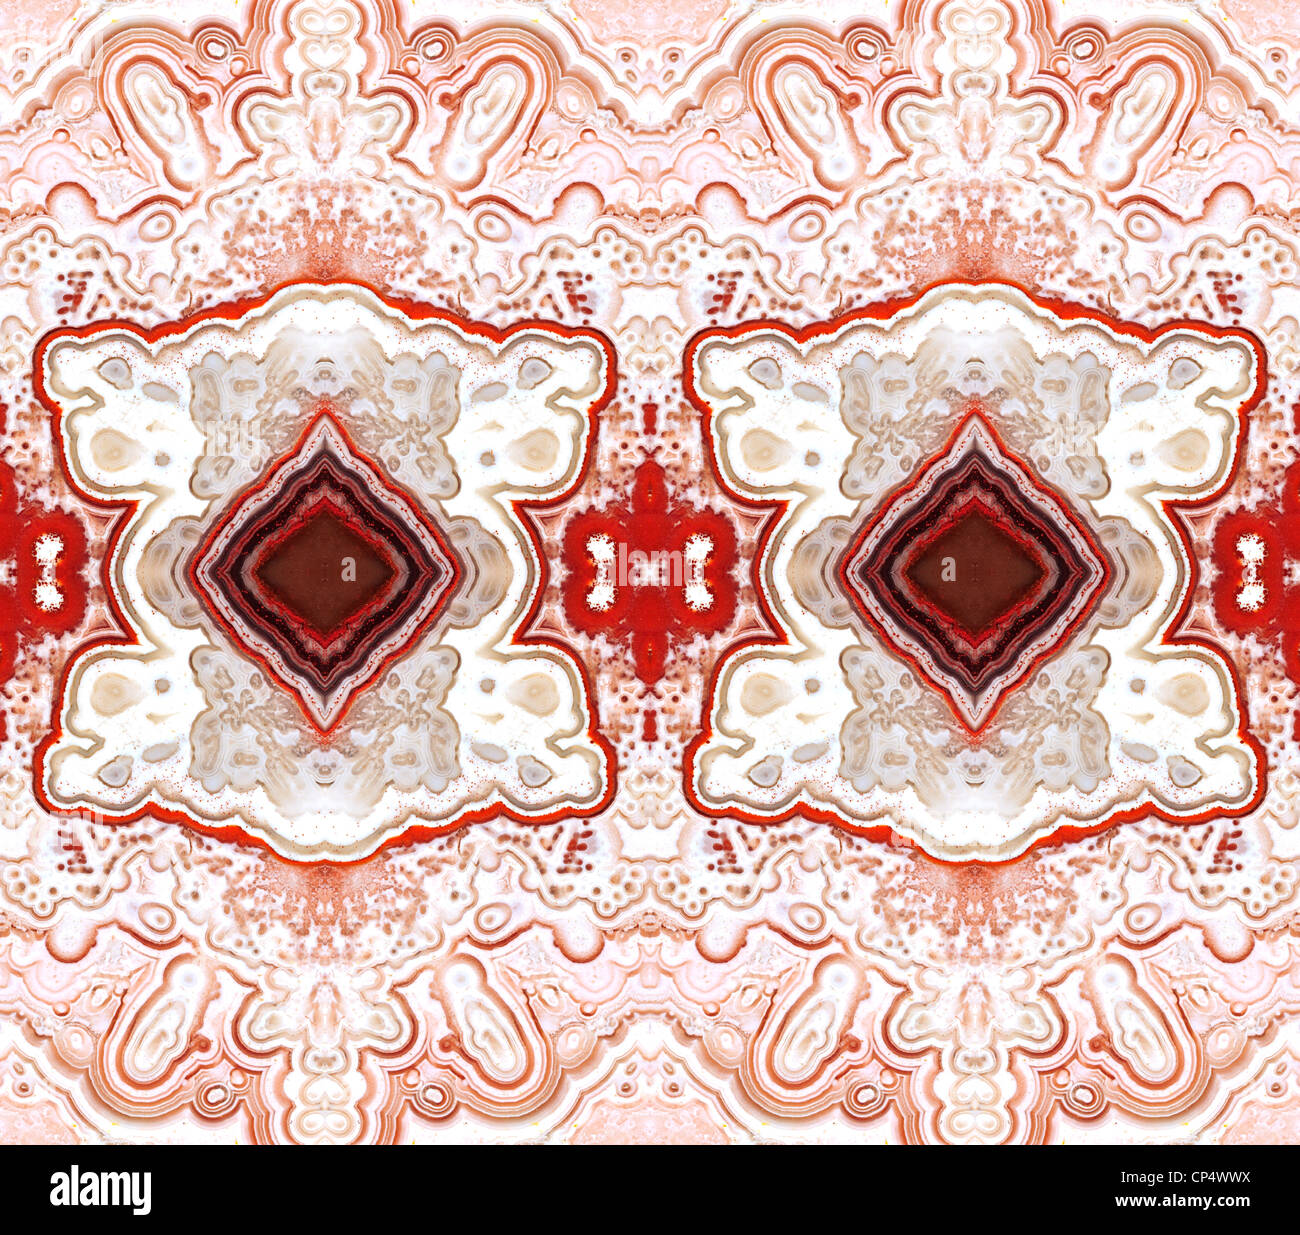 Tranche polie de Ocean Jasper (opaque, forme à grain fin de calcédoine) motif symétrique faite par la répétition de l'image Banque D'Images